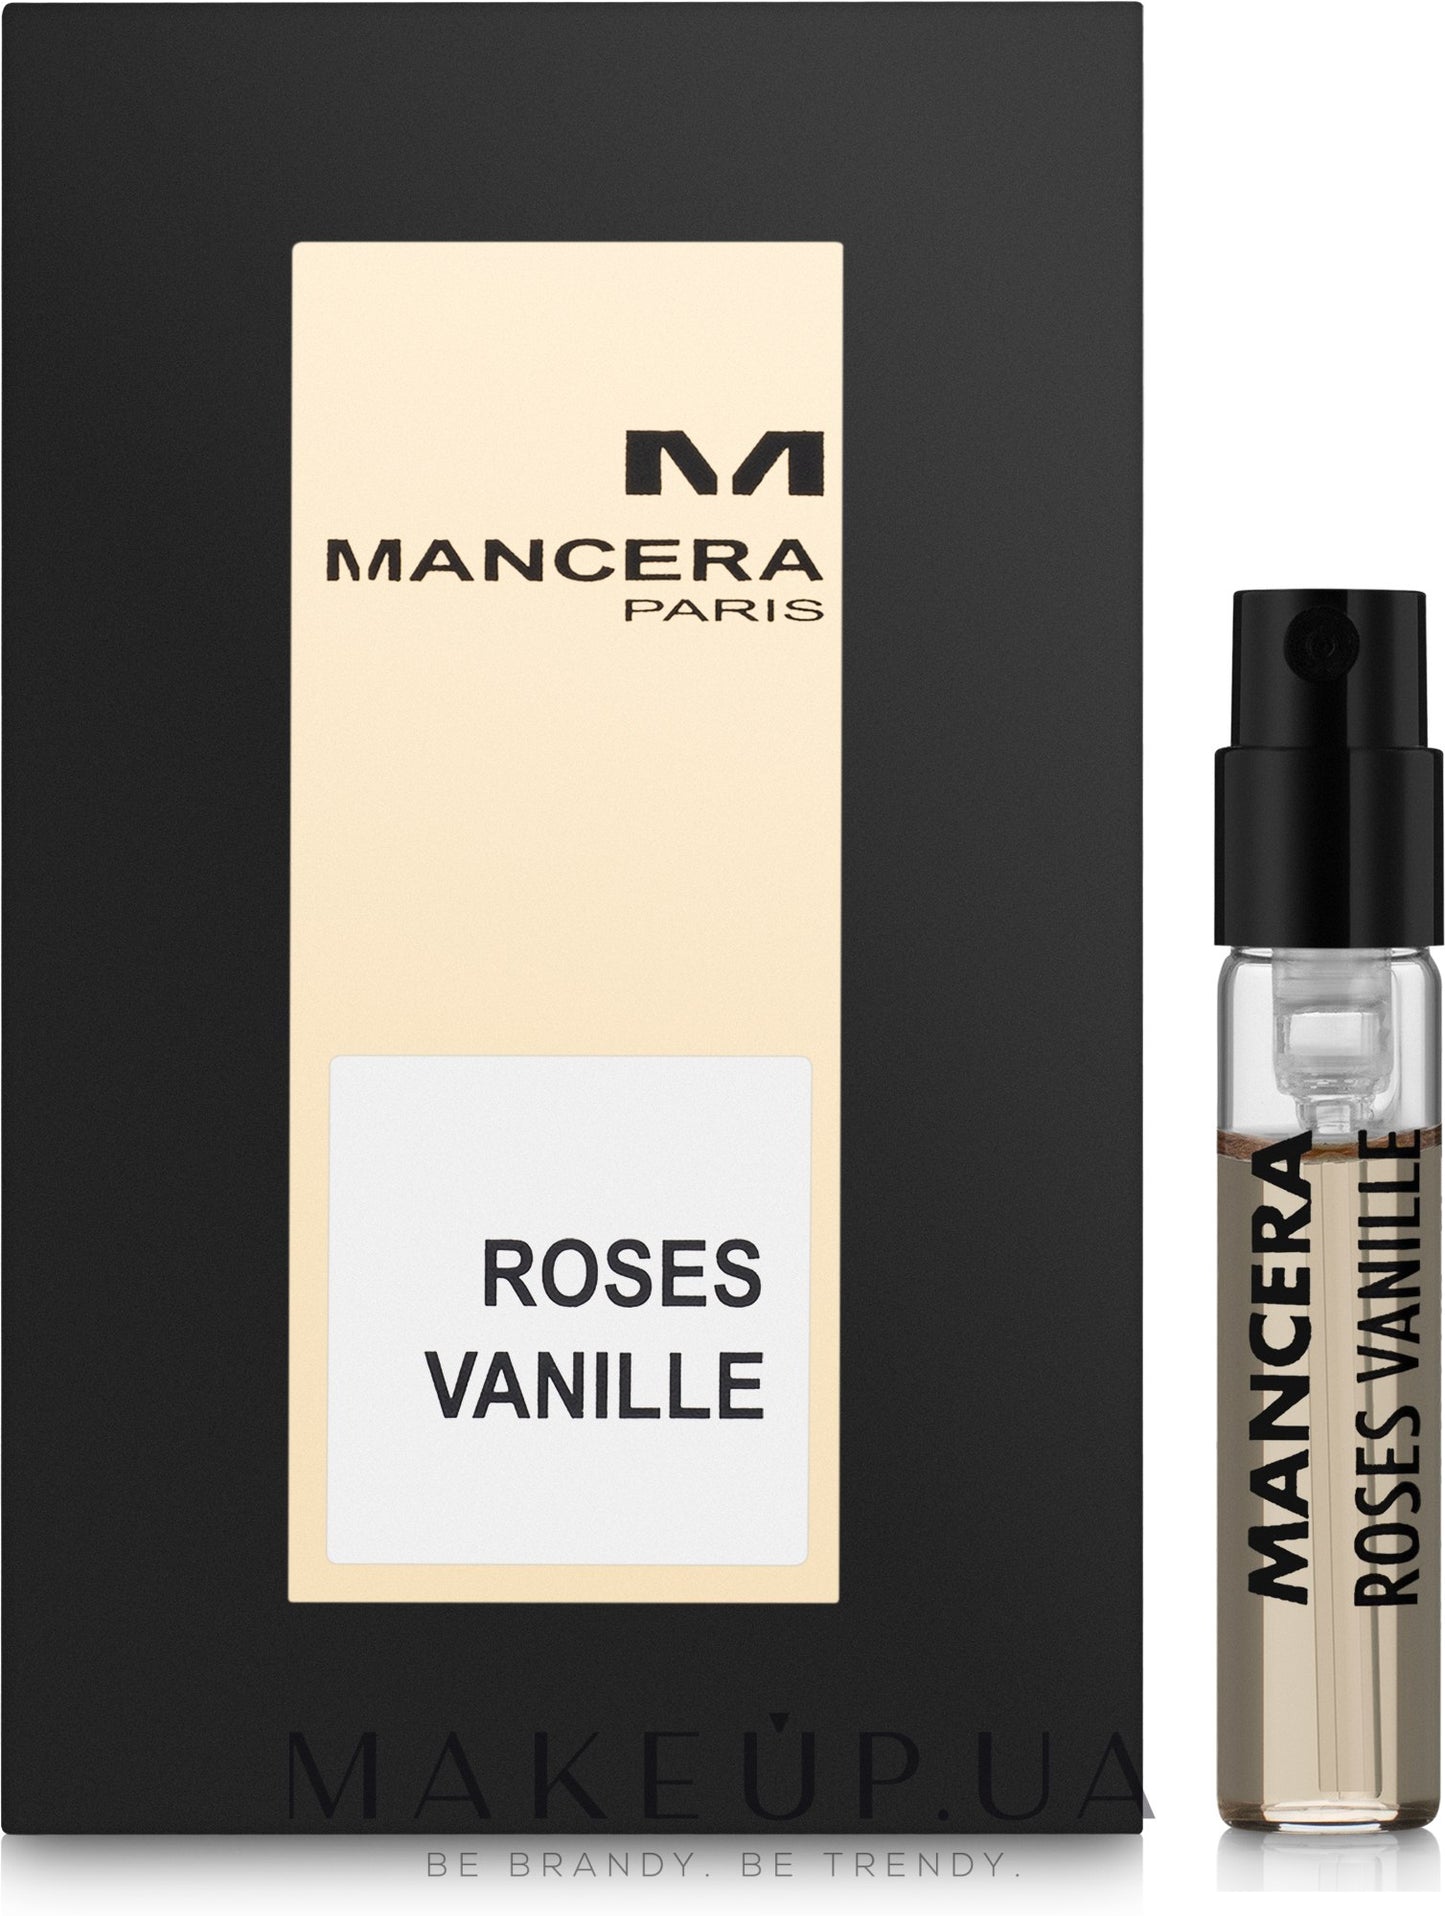 Μάνκερα Roses Vanille δείγματα-Mancera Roses Vanille-Mancera-2ml επίσημο δείγμα-creedαρώματα